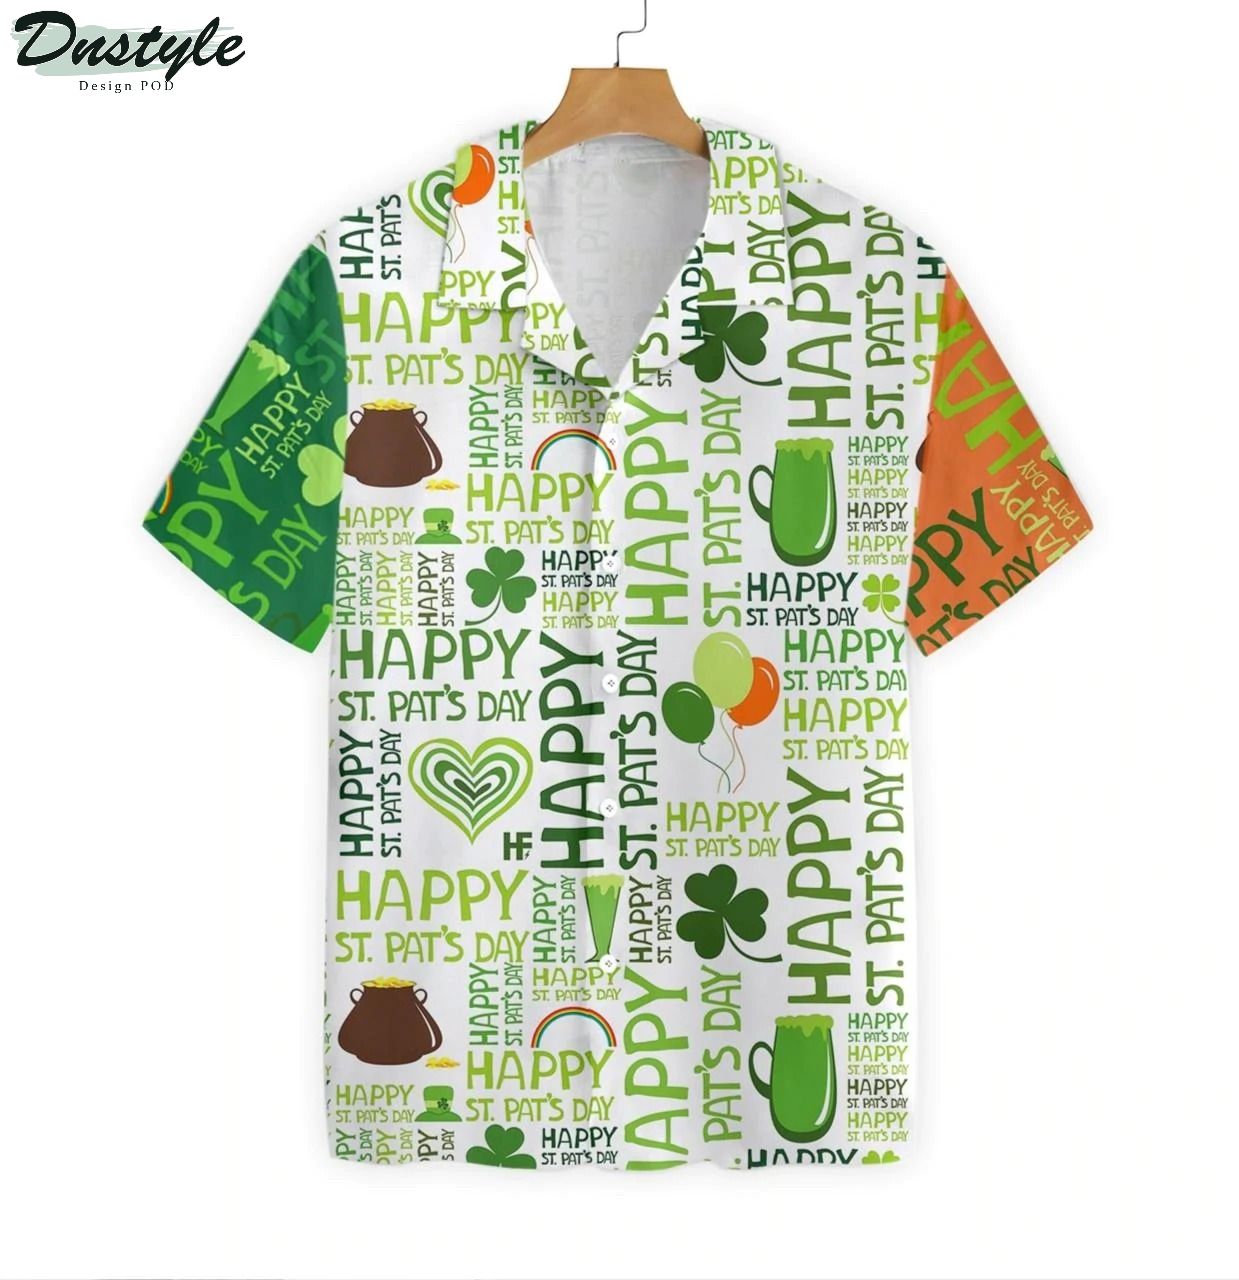 Happy saint patrick's day Irish Ireland hawaiian shirt